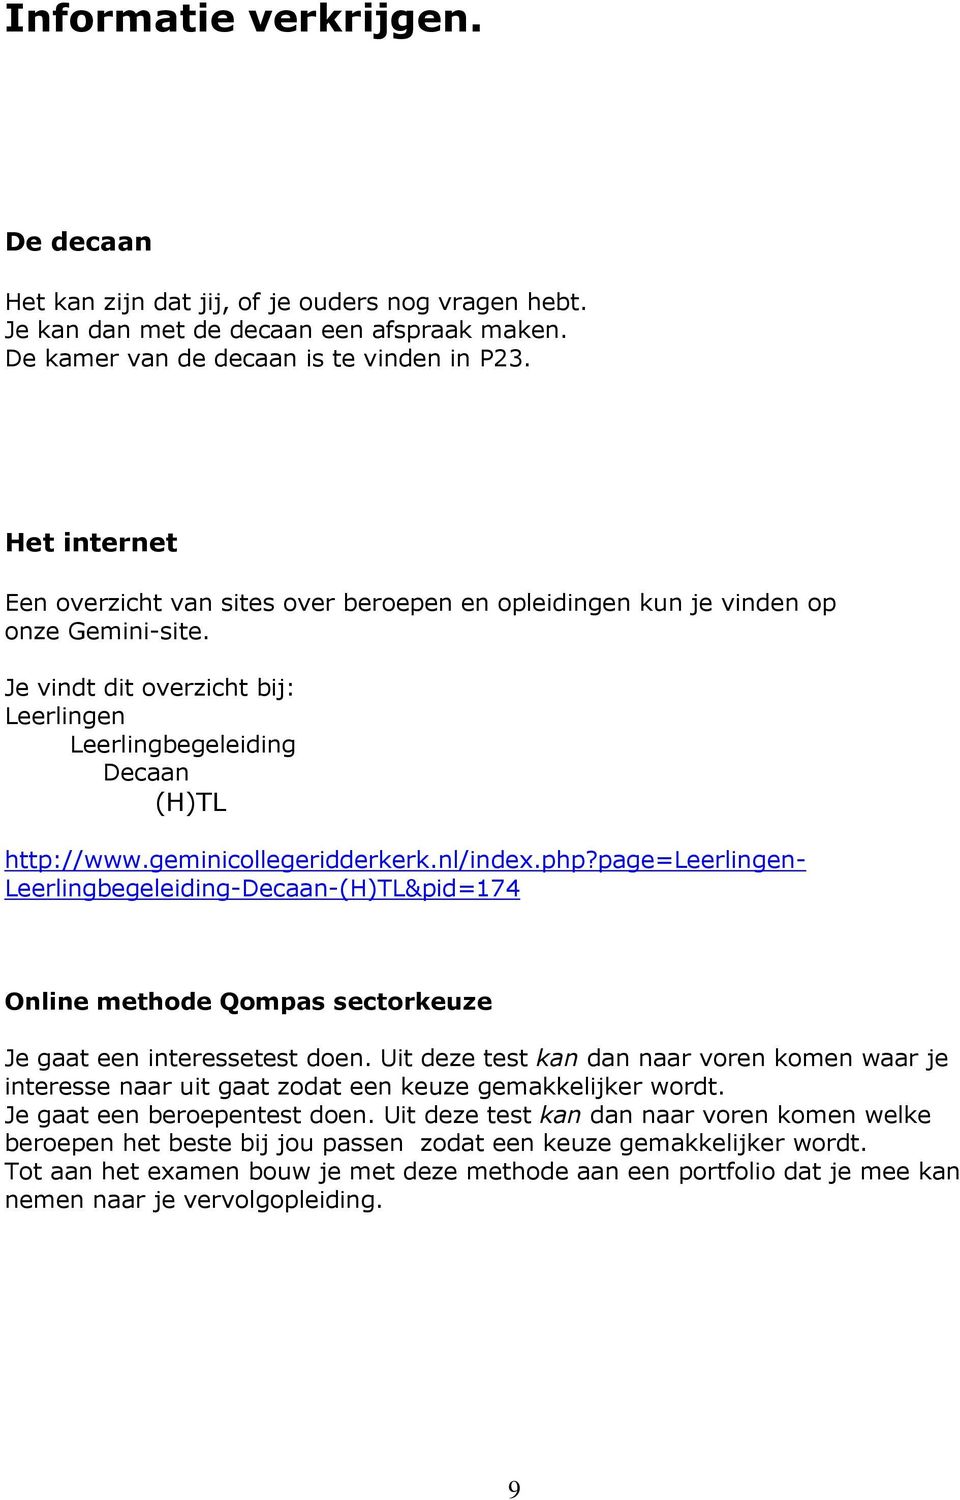 geminicollegeridderkerk.nl/index.php?page=leerlingen- Leerlingbegeleiding-Decaan-(H)TL&pid=174 Online methode Qompas sectorkeuze Je gaat een interessetest doen.